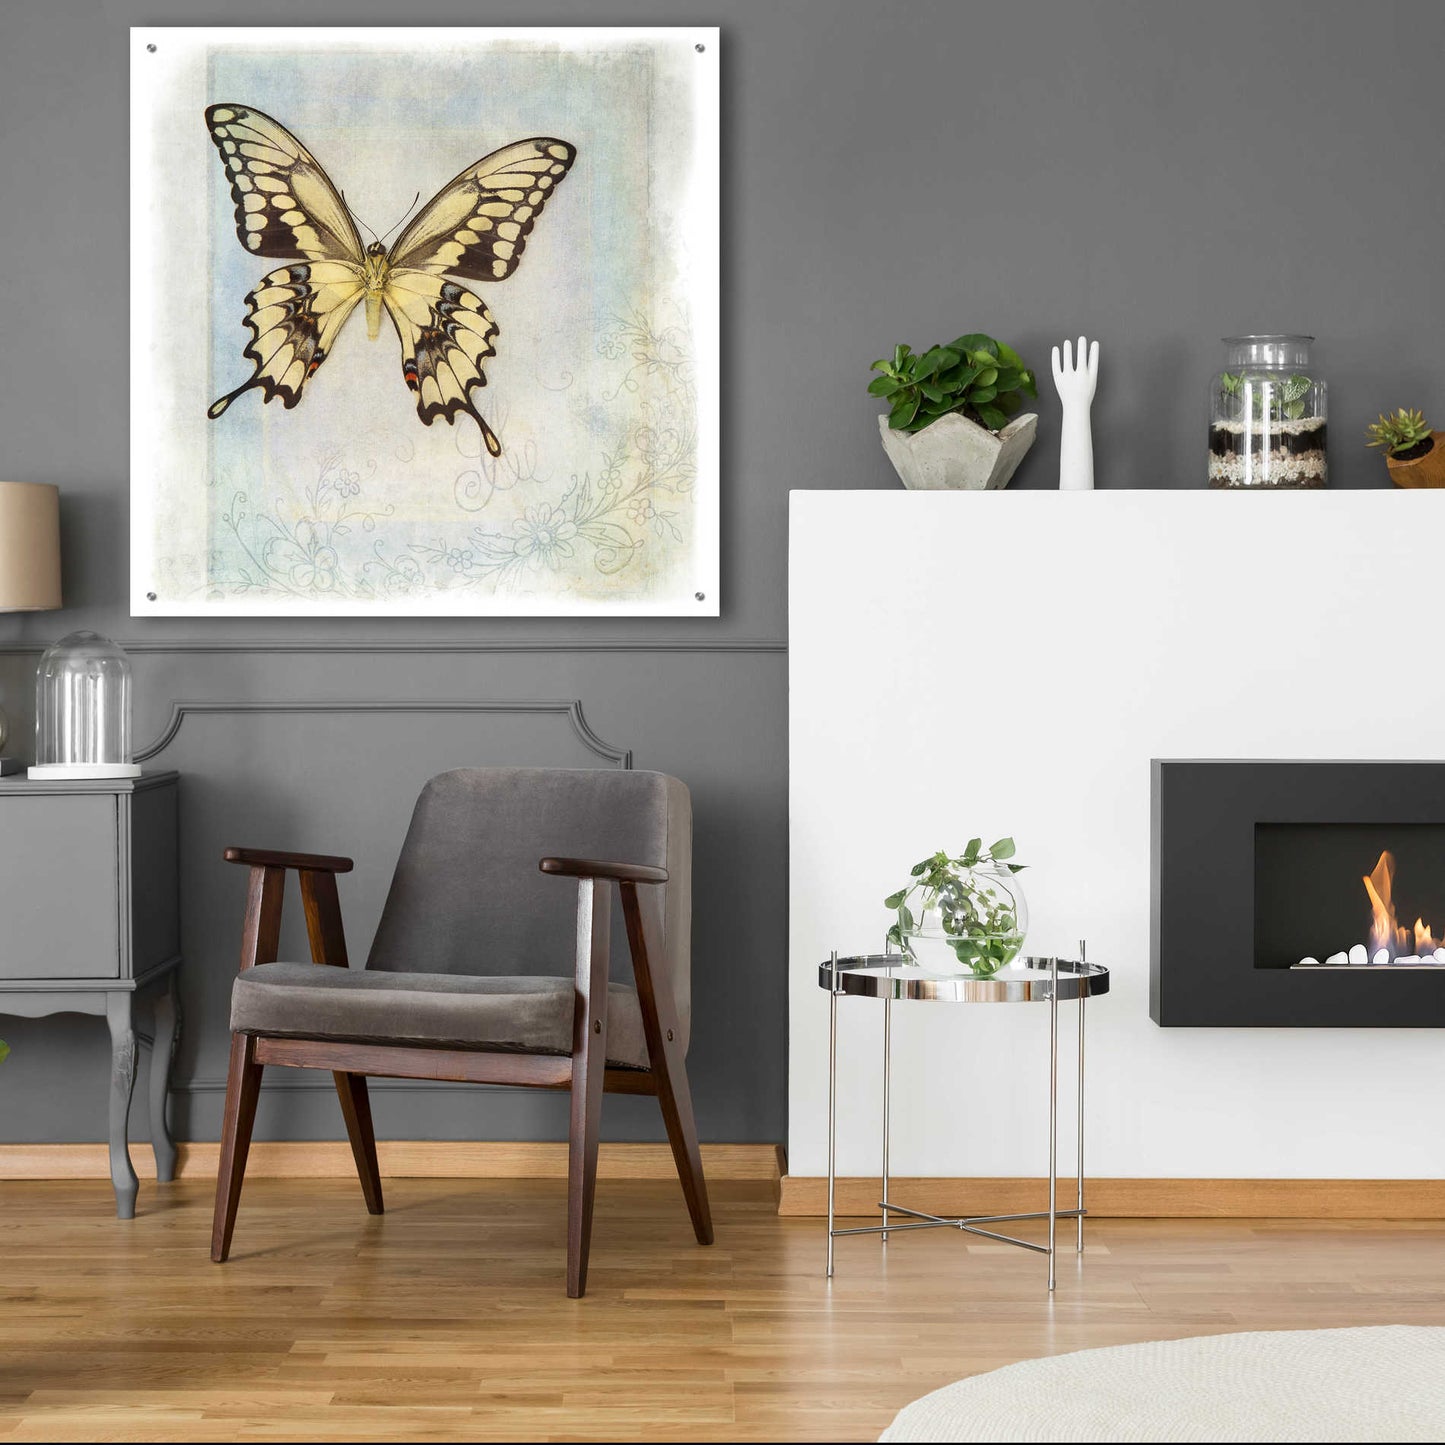 Epic Art 'Floating Butterfly V' by Debra Van Swearingen, Acrylic Glass Wall Art,36x36